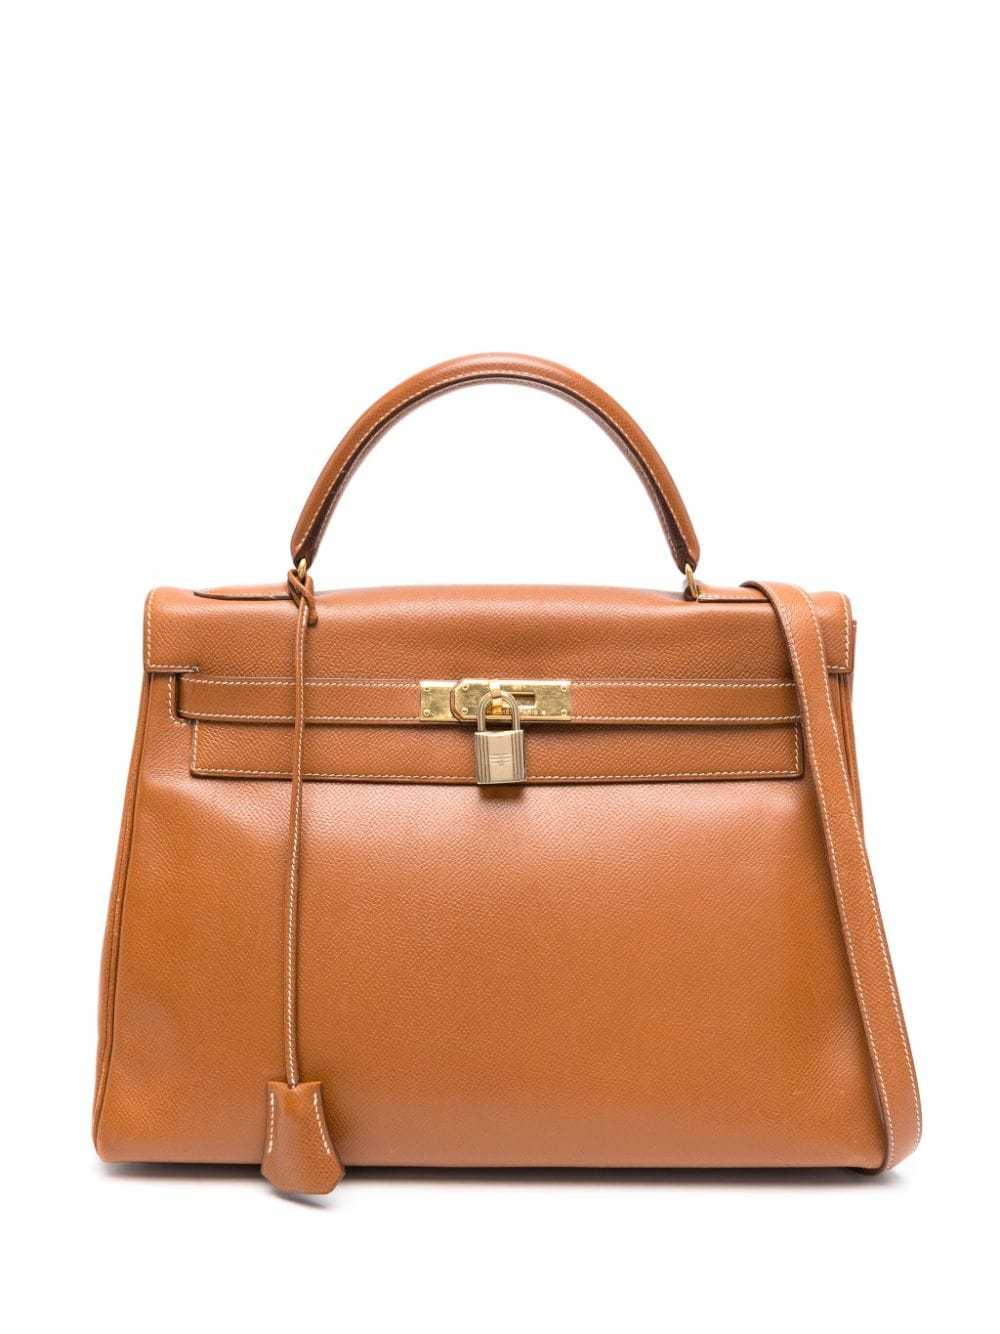 Hermès Pre-Owned 1991 Kelly handbag - Brown - image 1